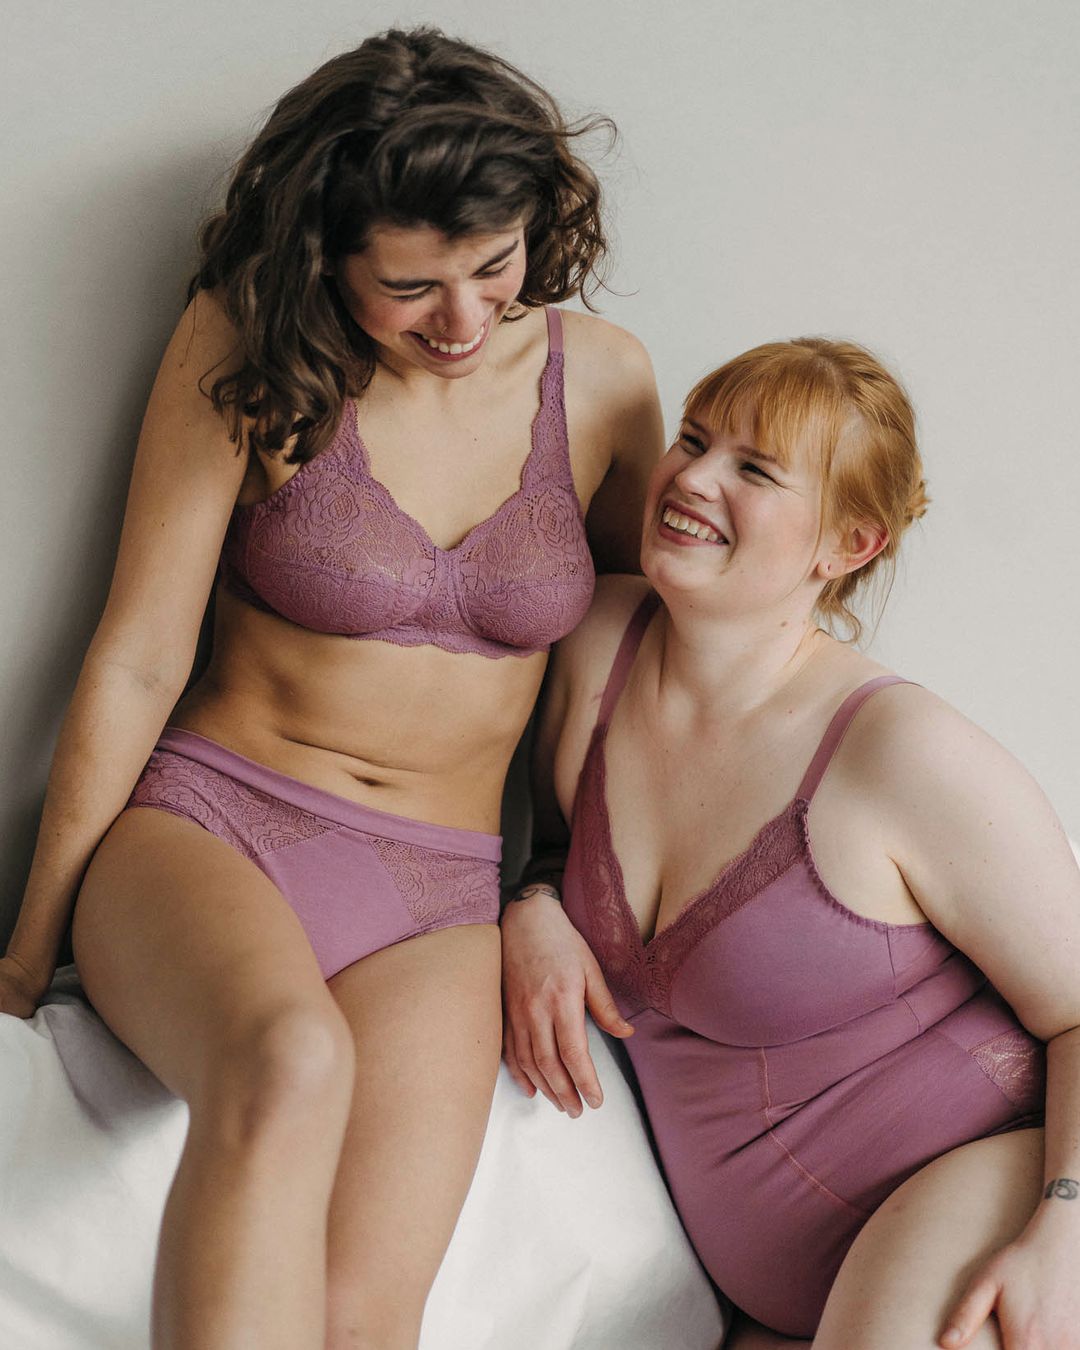 Two women wear sustainable underwear from Erlich Textil